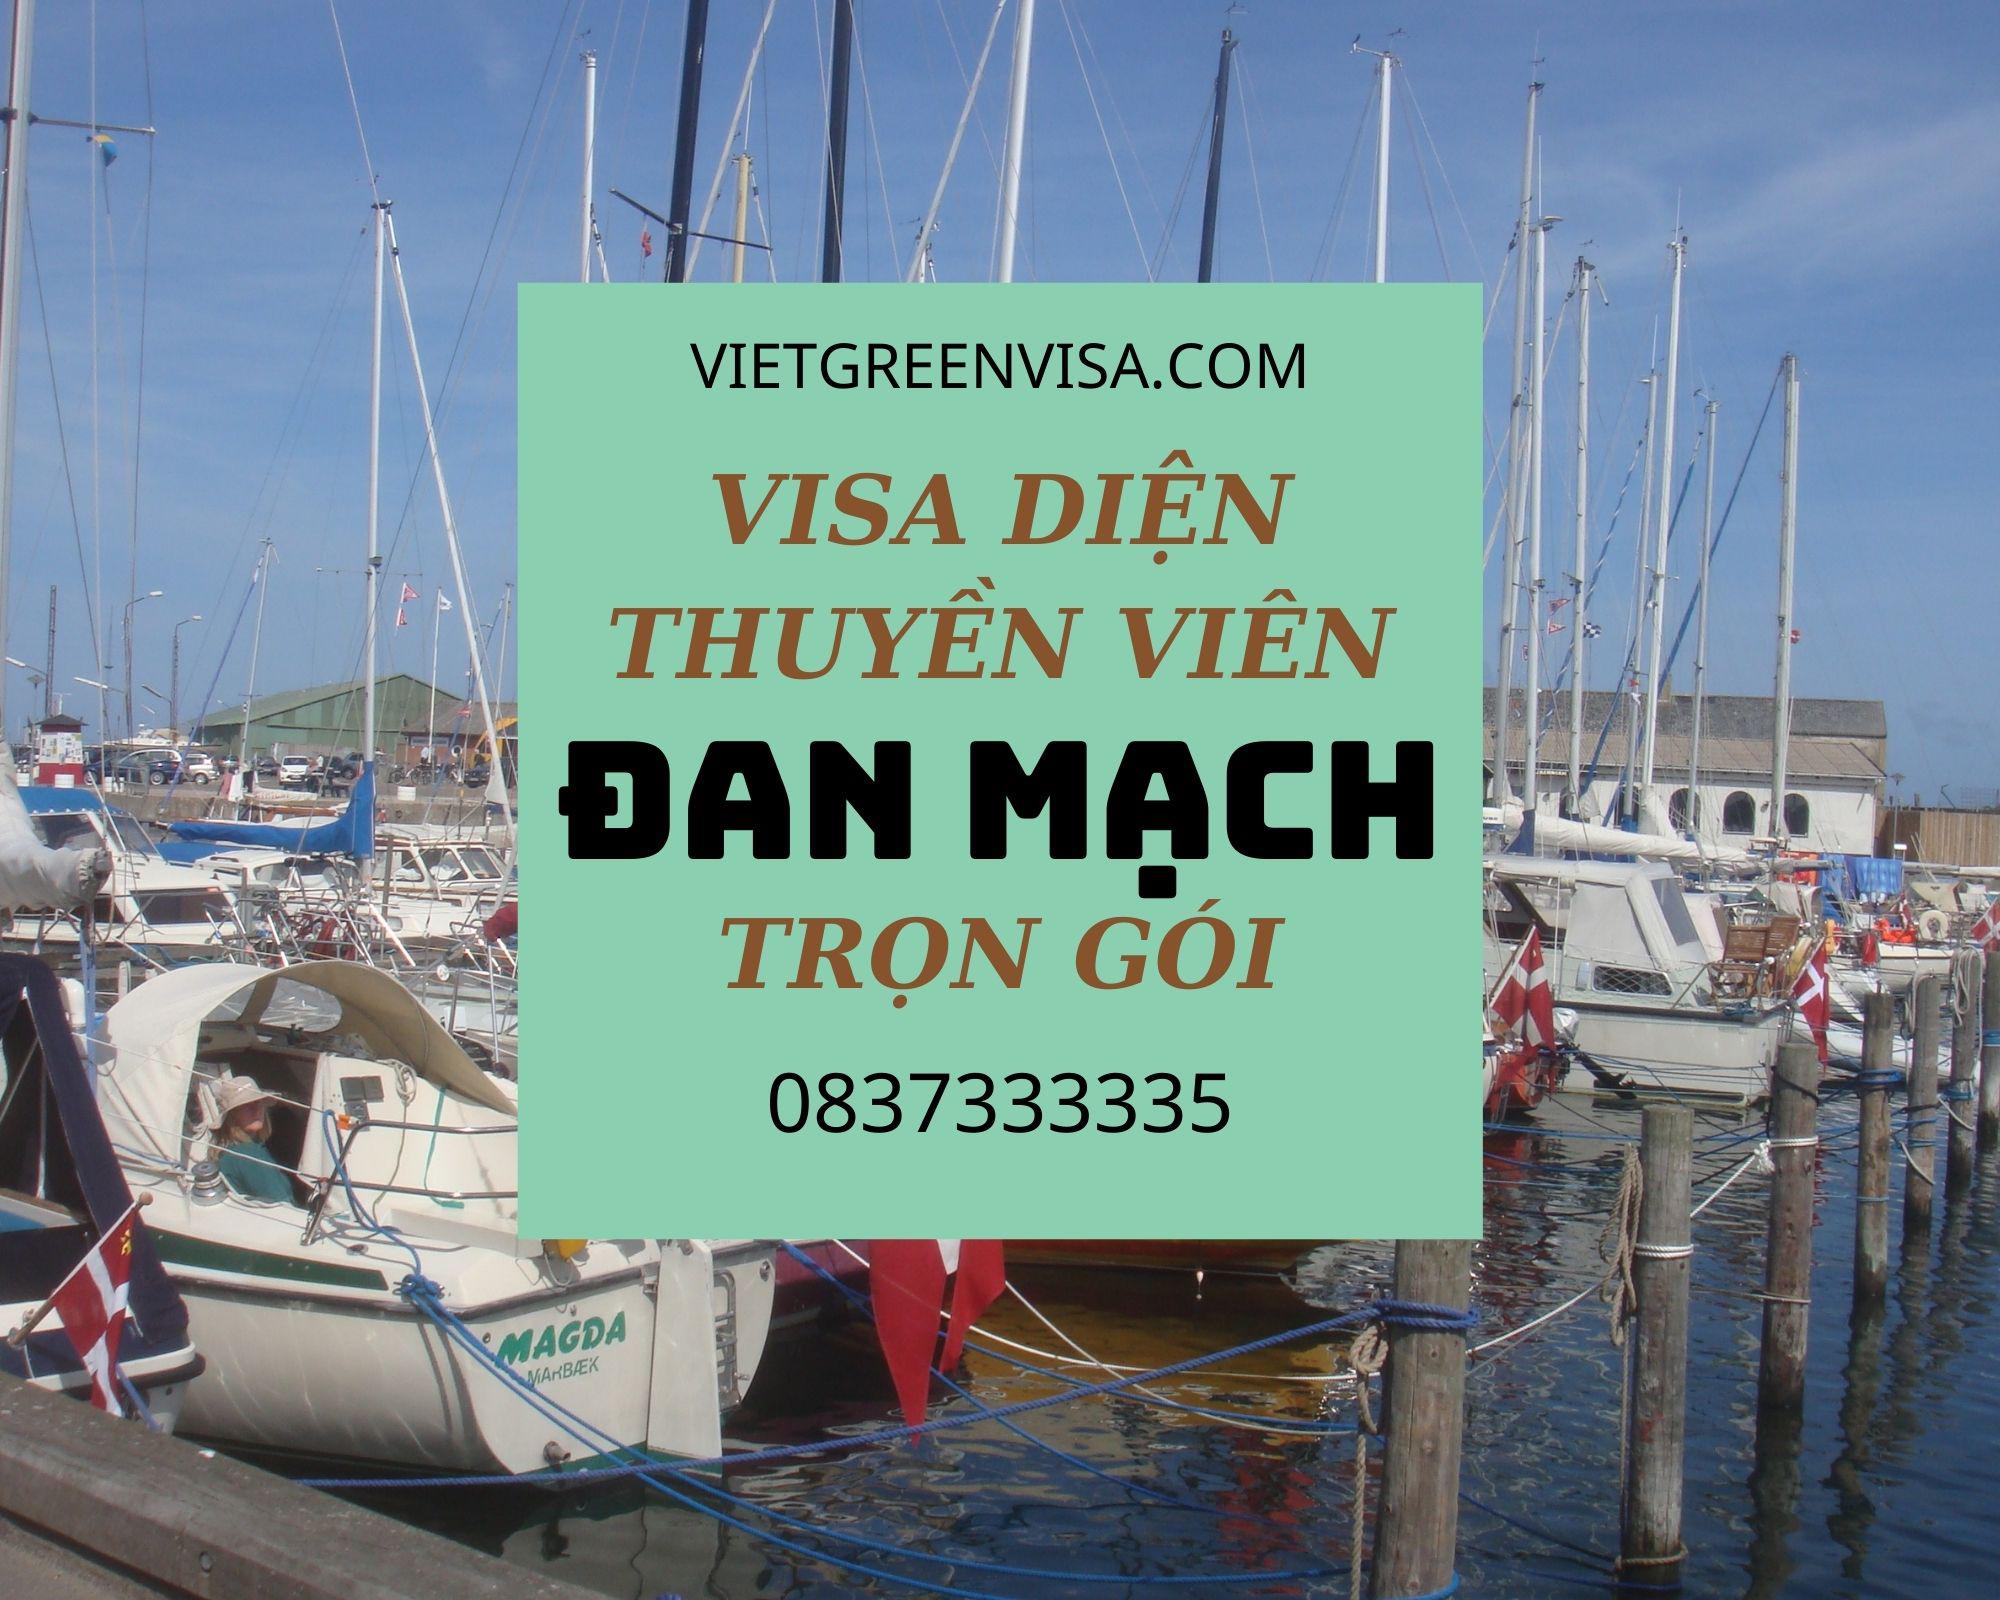 Dịch vụ visa Đan Mạch diện thuyền viên, visa Đan Mạch cho đoàn thuỷ thủ